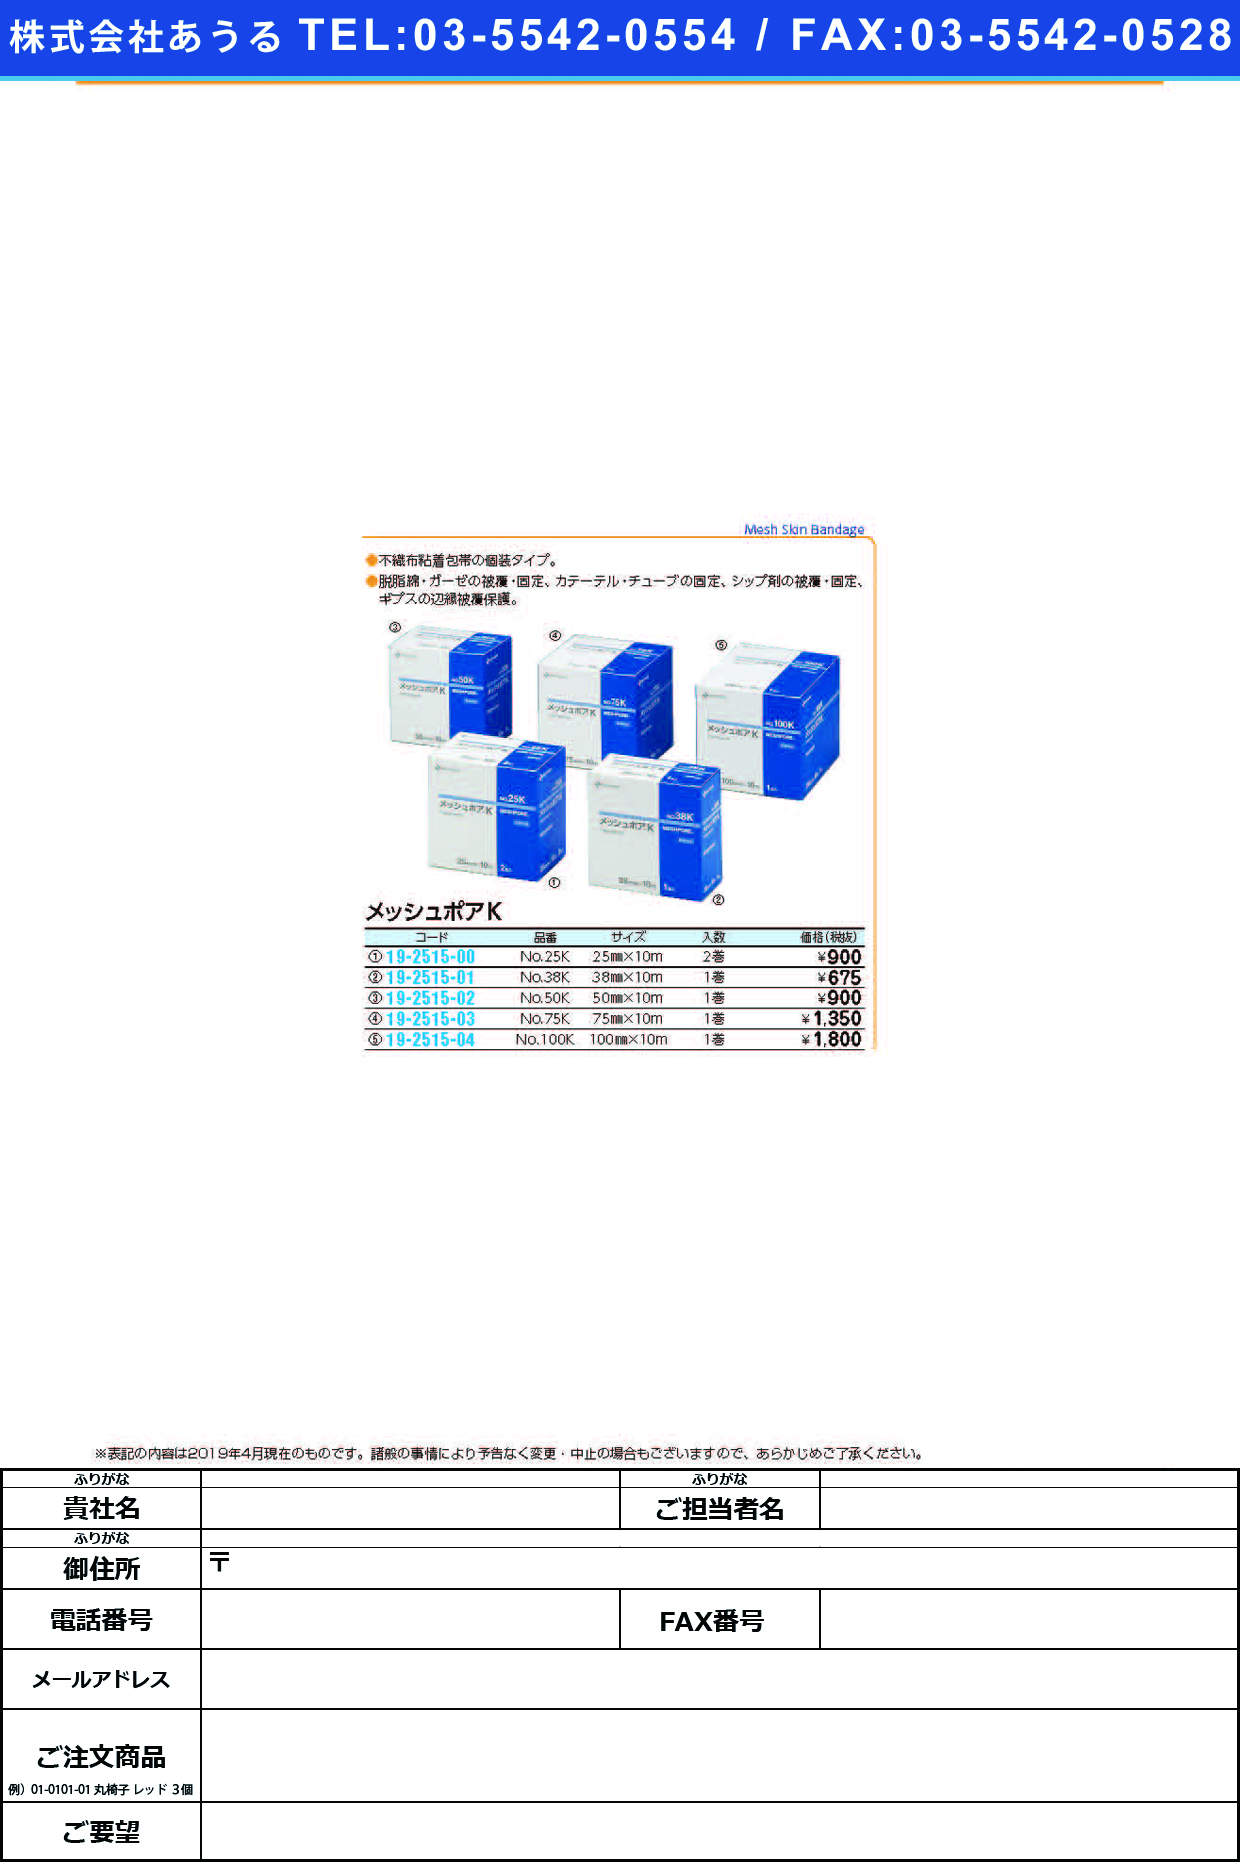 (19-2515-04)メッシュポアＫ NO.100K(100MMX10M) ﾒｯｼｭﾎﾟｱK(ニチバン)【1個単位】【2019年カタログ商品】